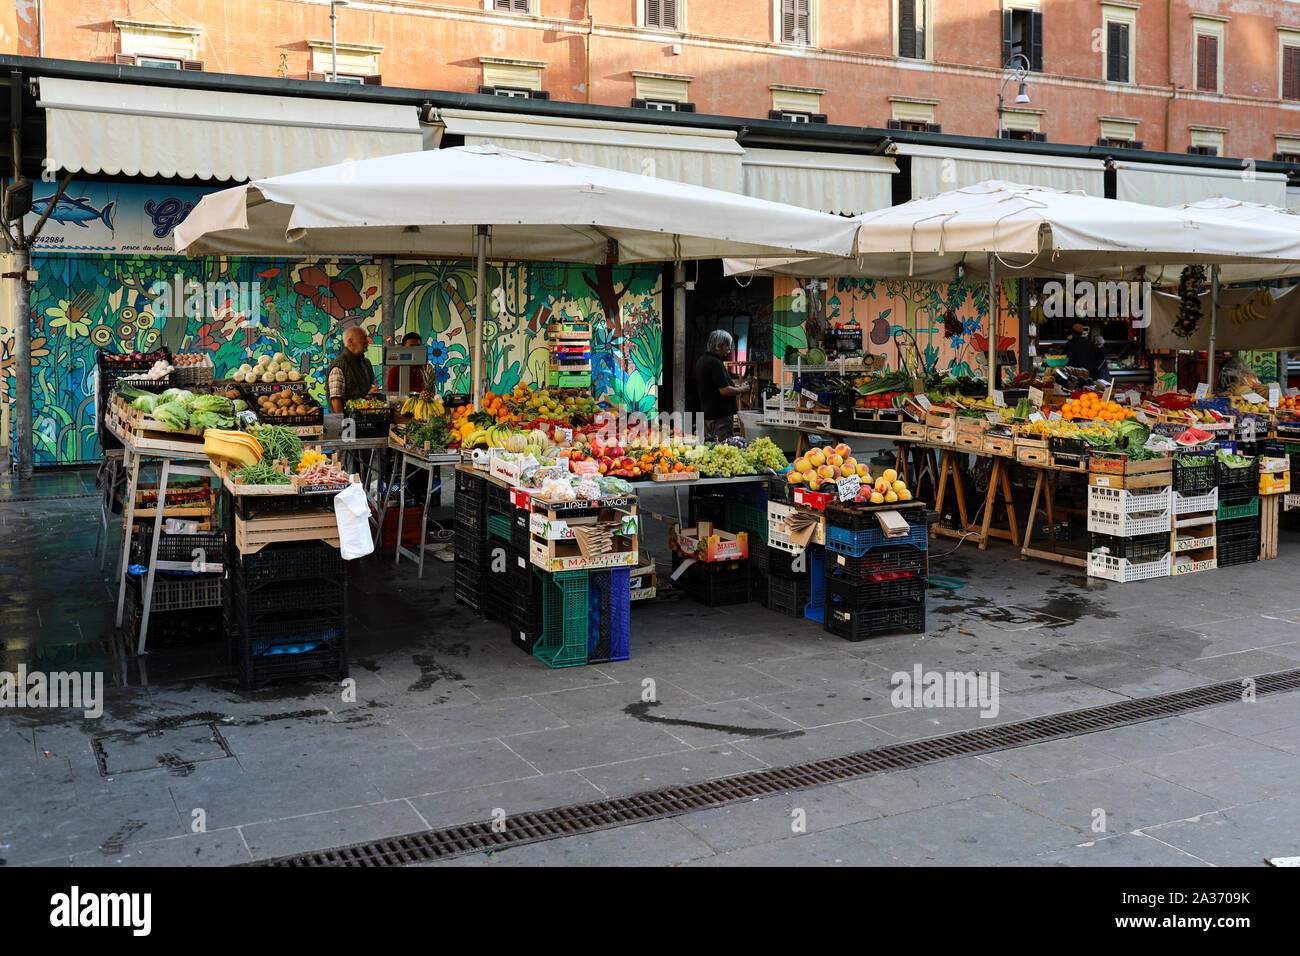 Mercato di San Cosimato - mercato di frutta e verdura - nel quartiere di Trastevere a Roma, Italia Foto Stock